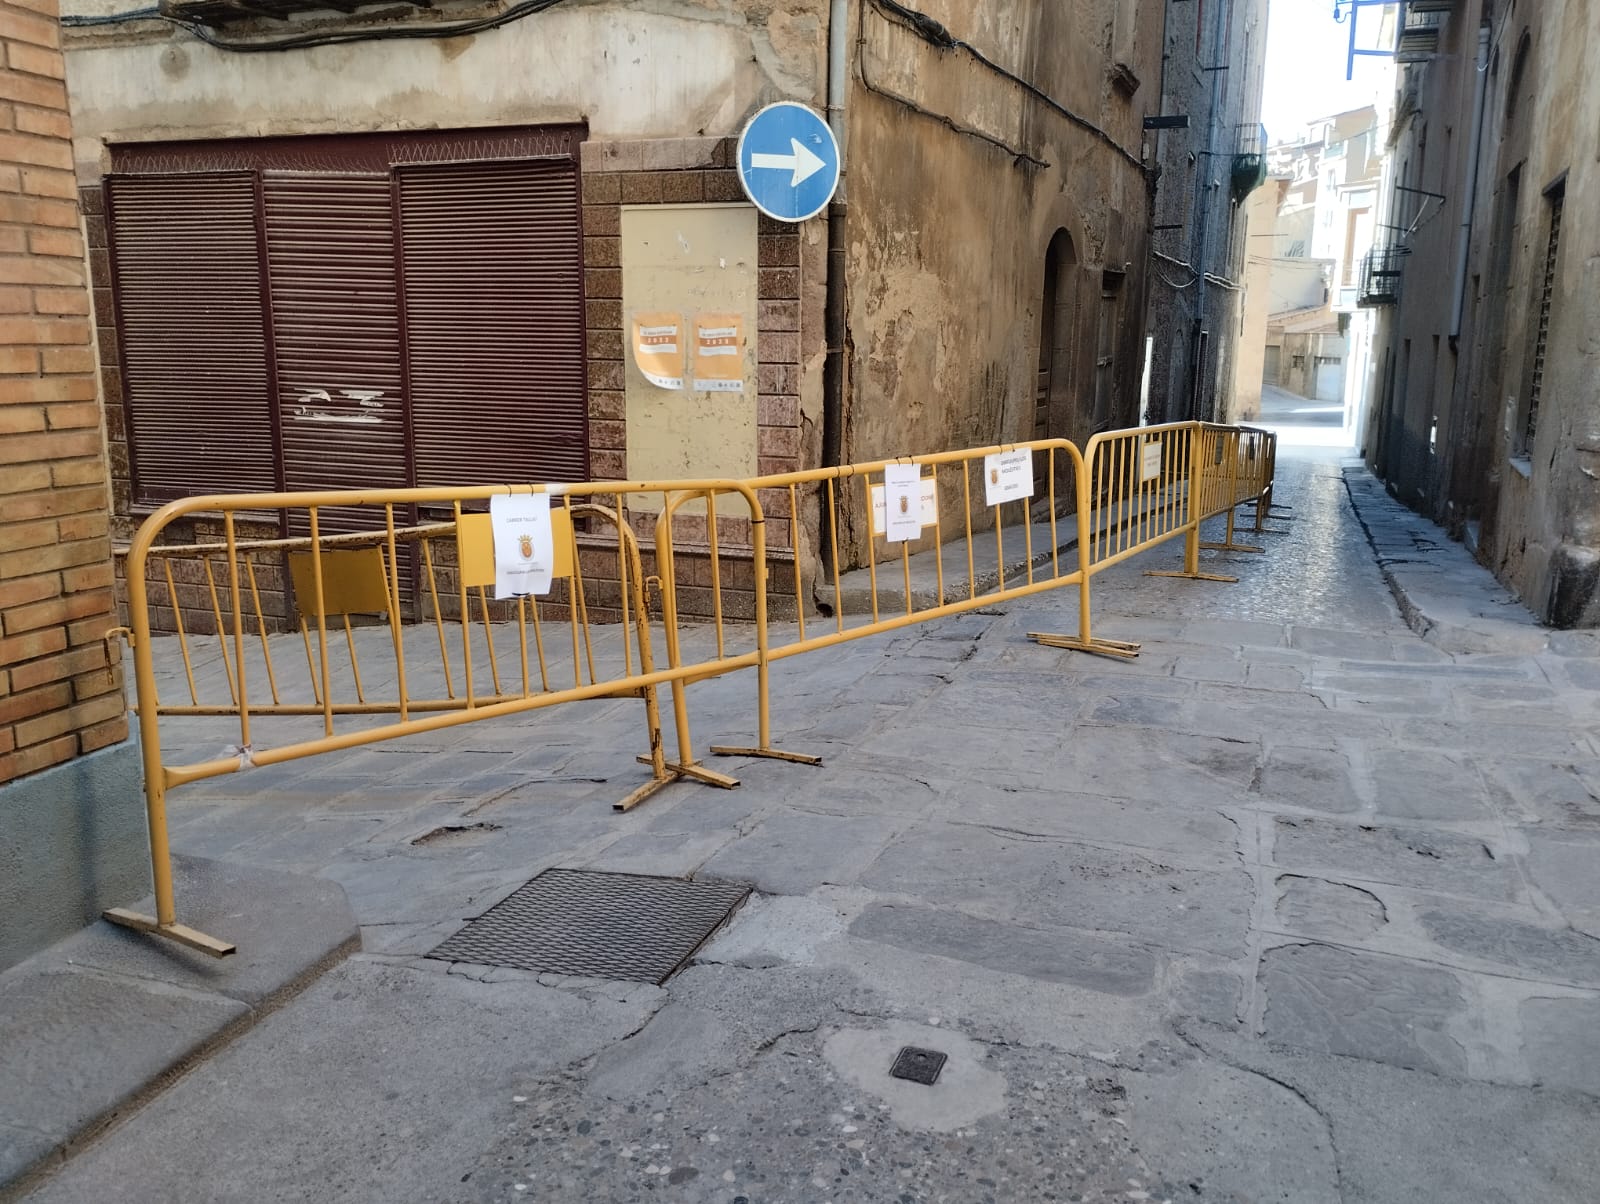 Restricció preventiva dels carrers Doctor Merli, Carrer de les Flors i del Teatre